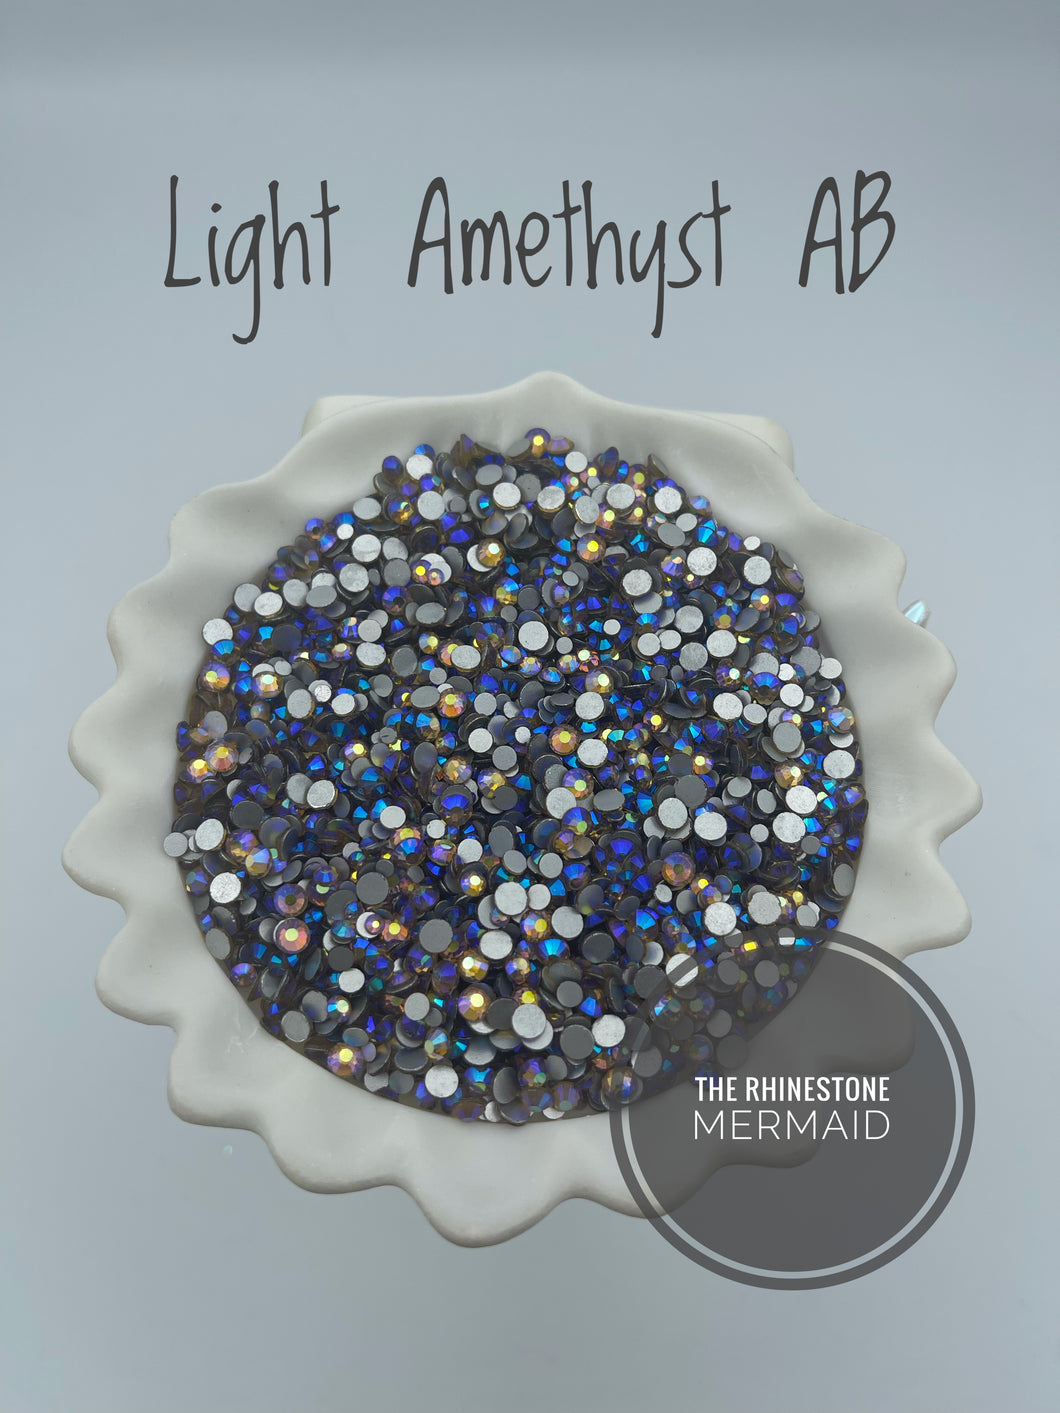 Light Amethyst AB